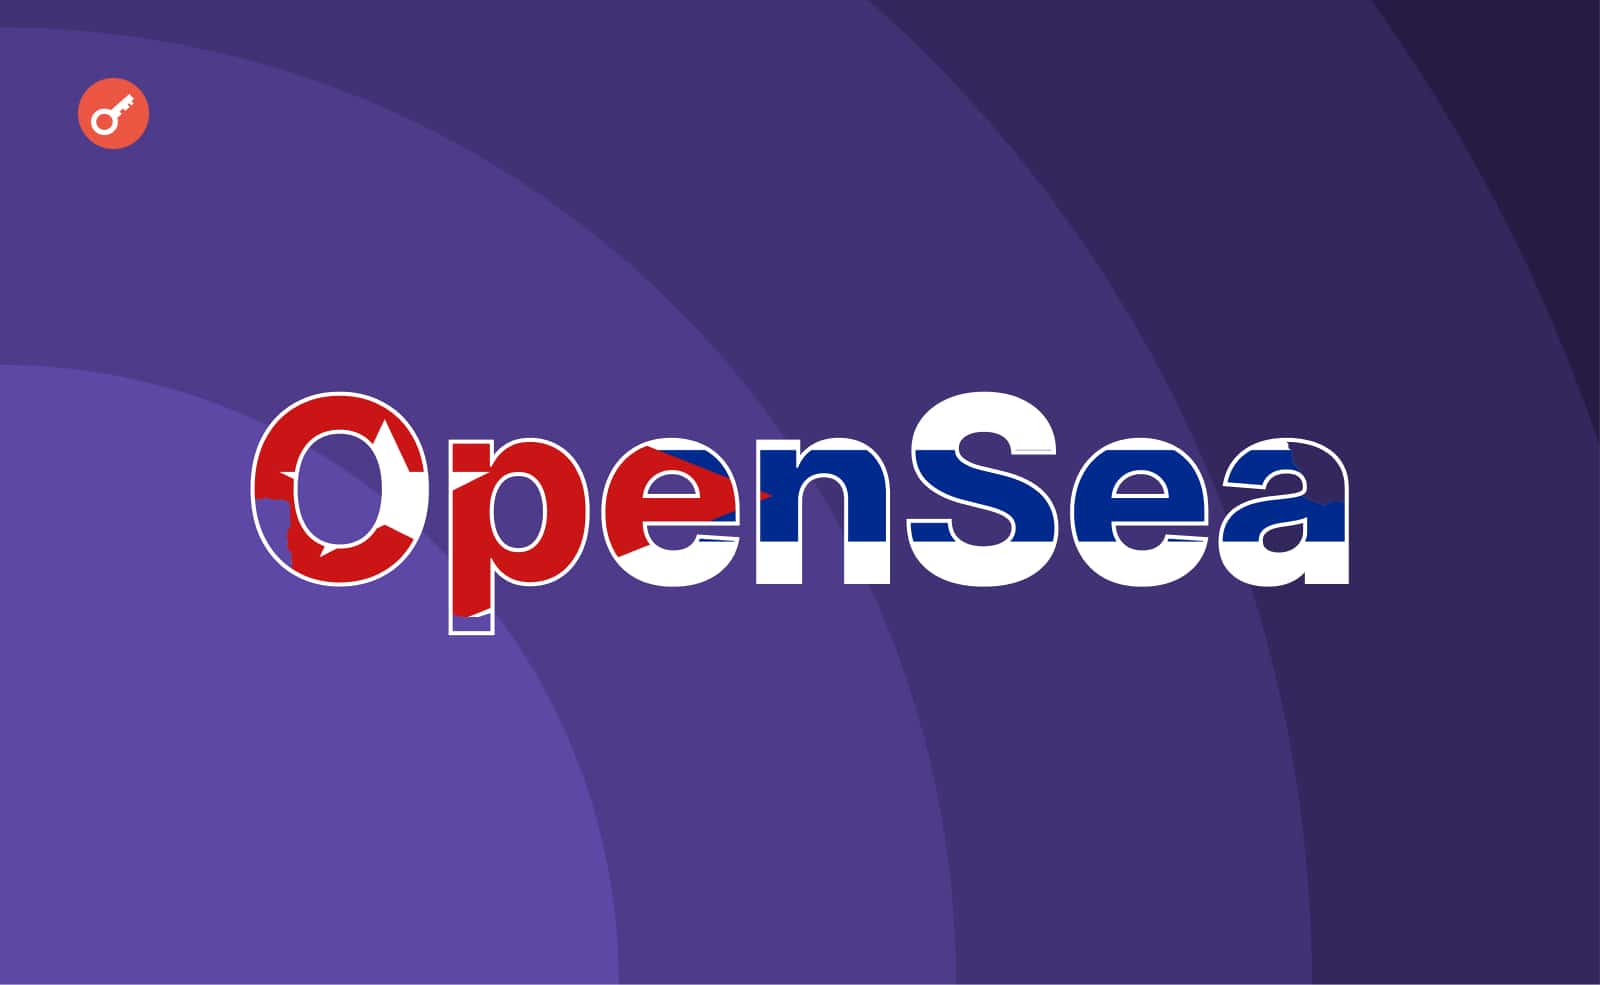 Daily: OpenSea забанил кубинских художников и клиентов. Заглавный коллаж новости.